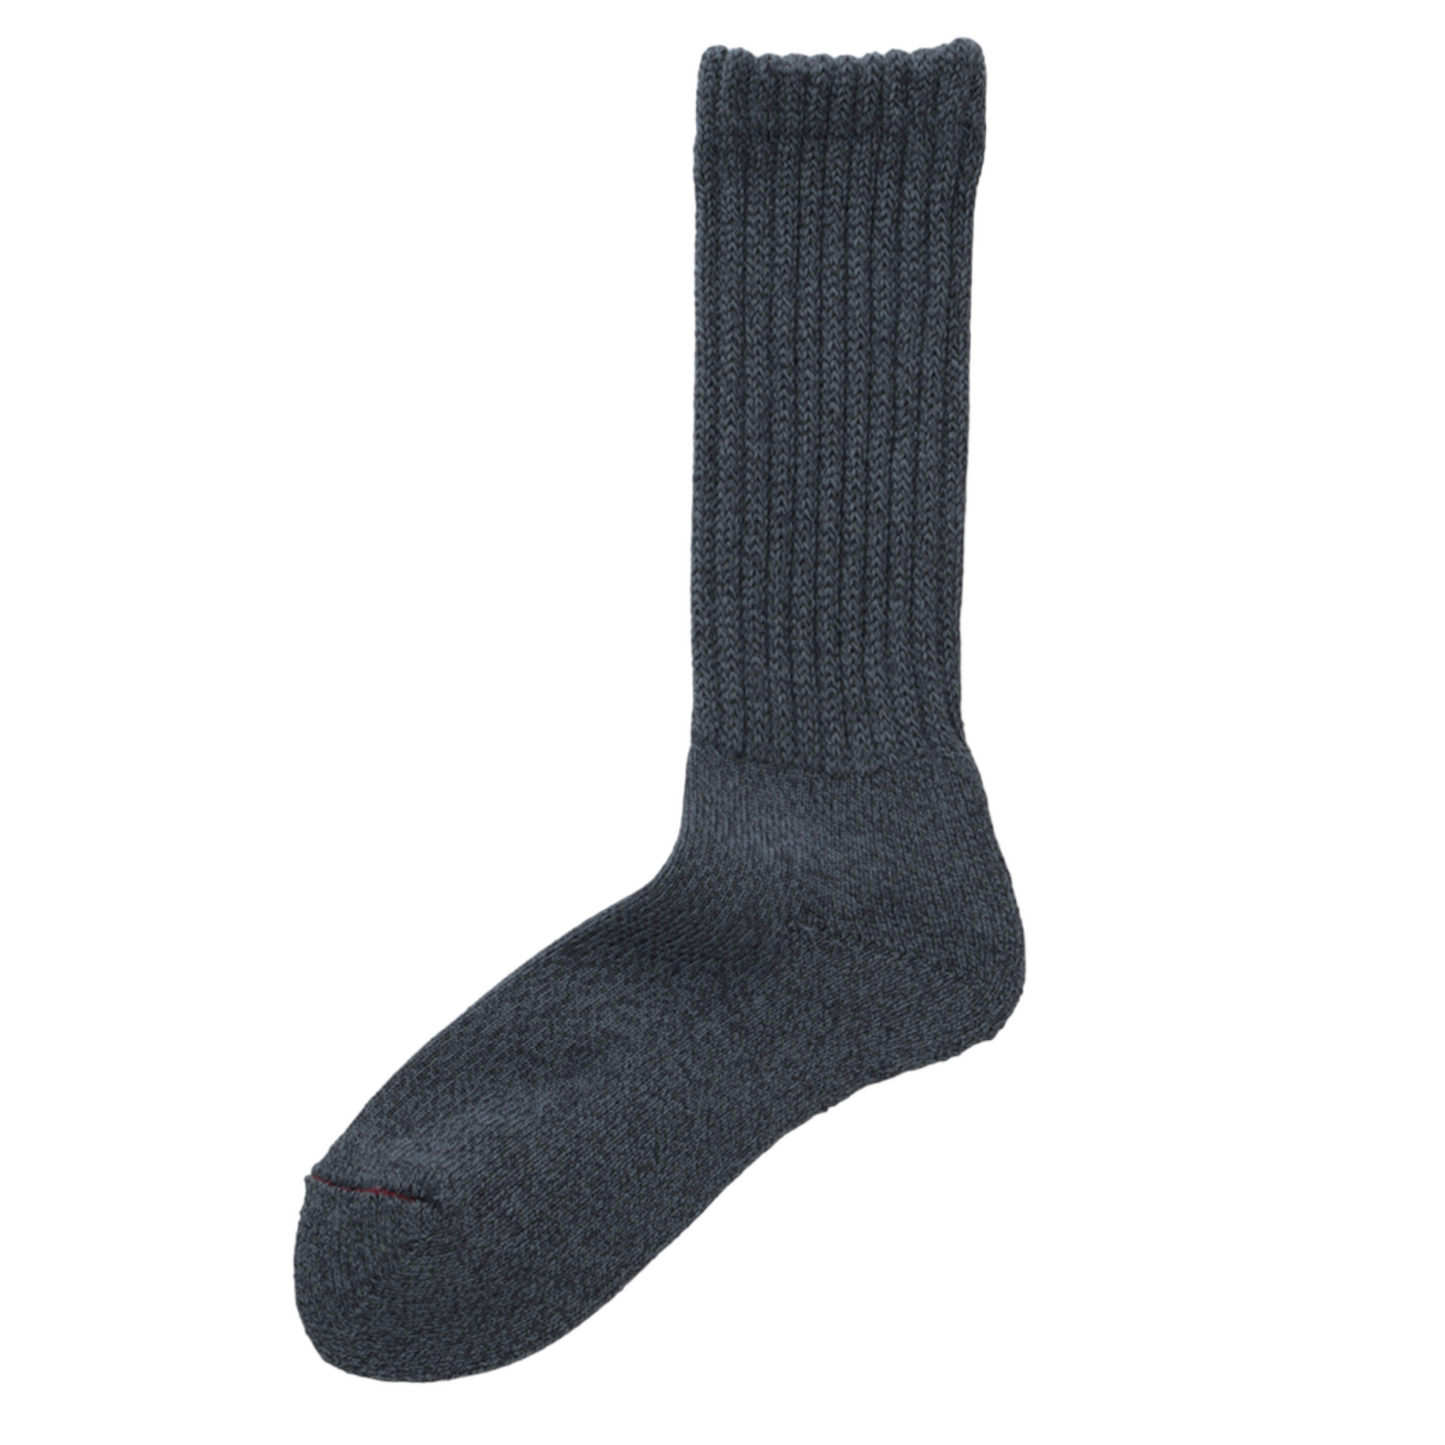 SUNNYSIDERS_ROTOTO_R1334 LOOSE PILE CREW SOCKS - M.Blue_Socks